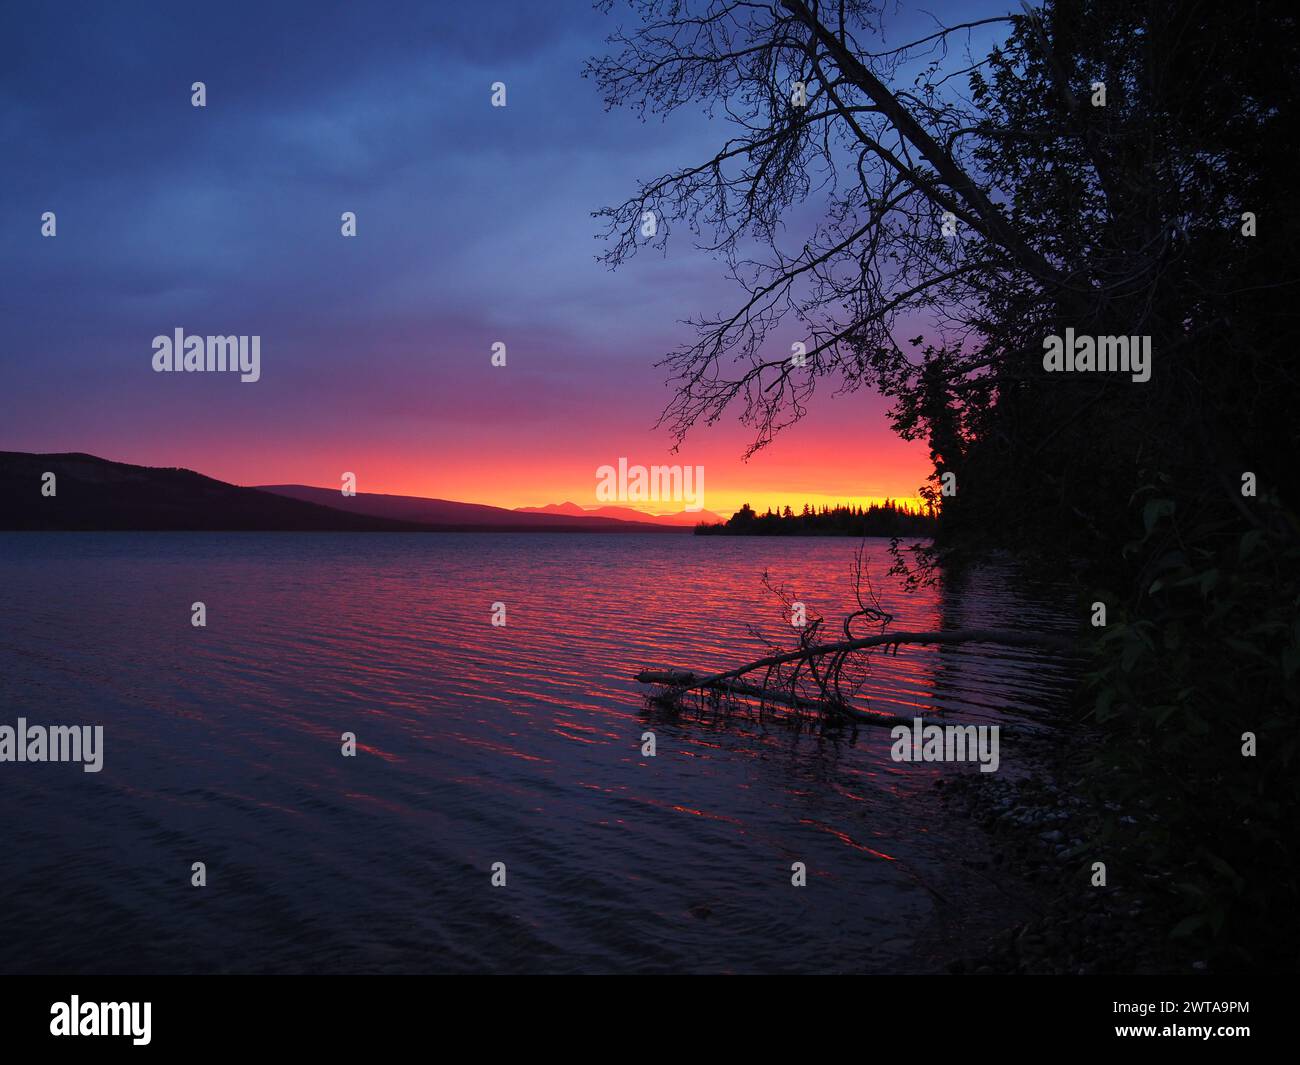 A Little Atlin Lake, Yukon, Canada, il tramonto riempie il cielo di arance e viola mentre gli alberi in primo piano sono sagomati Foto Stock